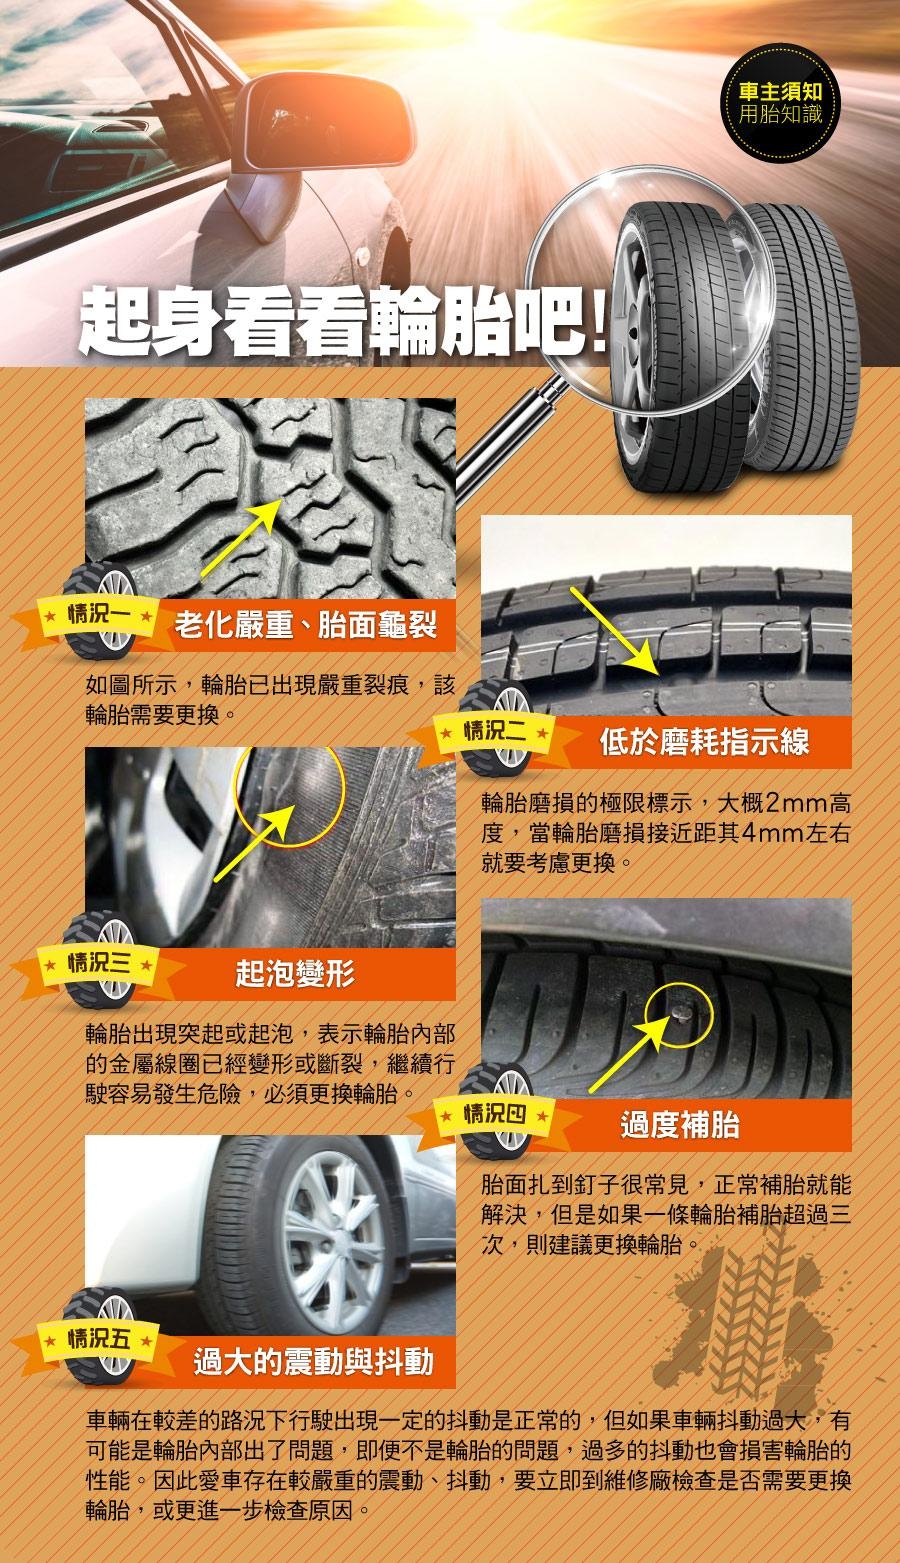 【將軍】ALTIMAX GS5_205/65/15吋舒適輪胎_送專業安裝 四入組(GS5)